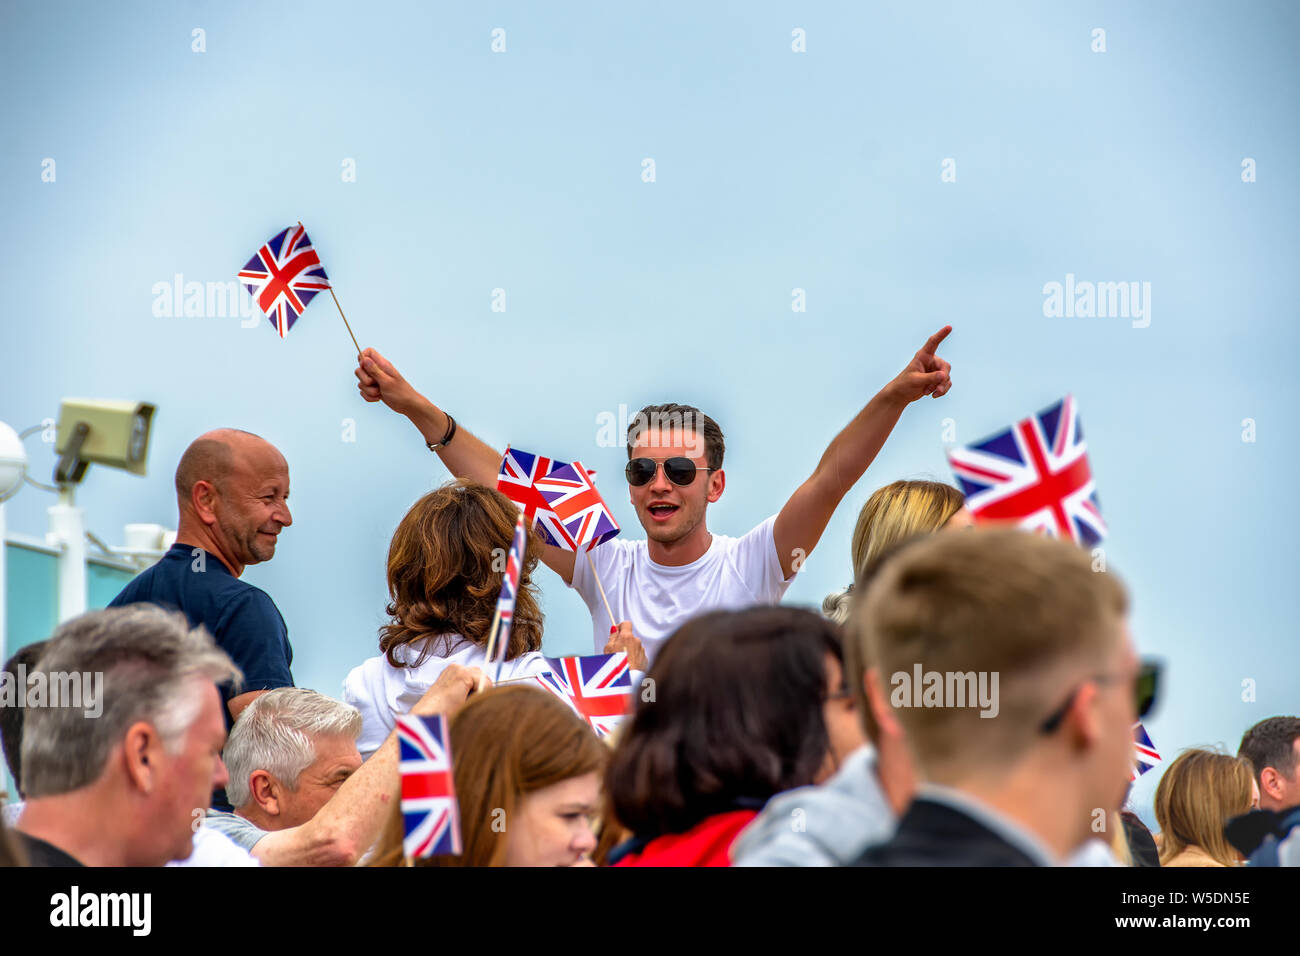 Mann dirigiert die Menge, winkt Union Jack Flaggen Stockfoto